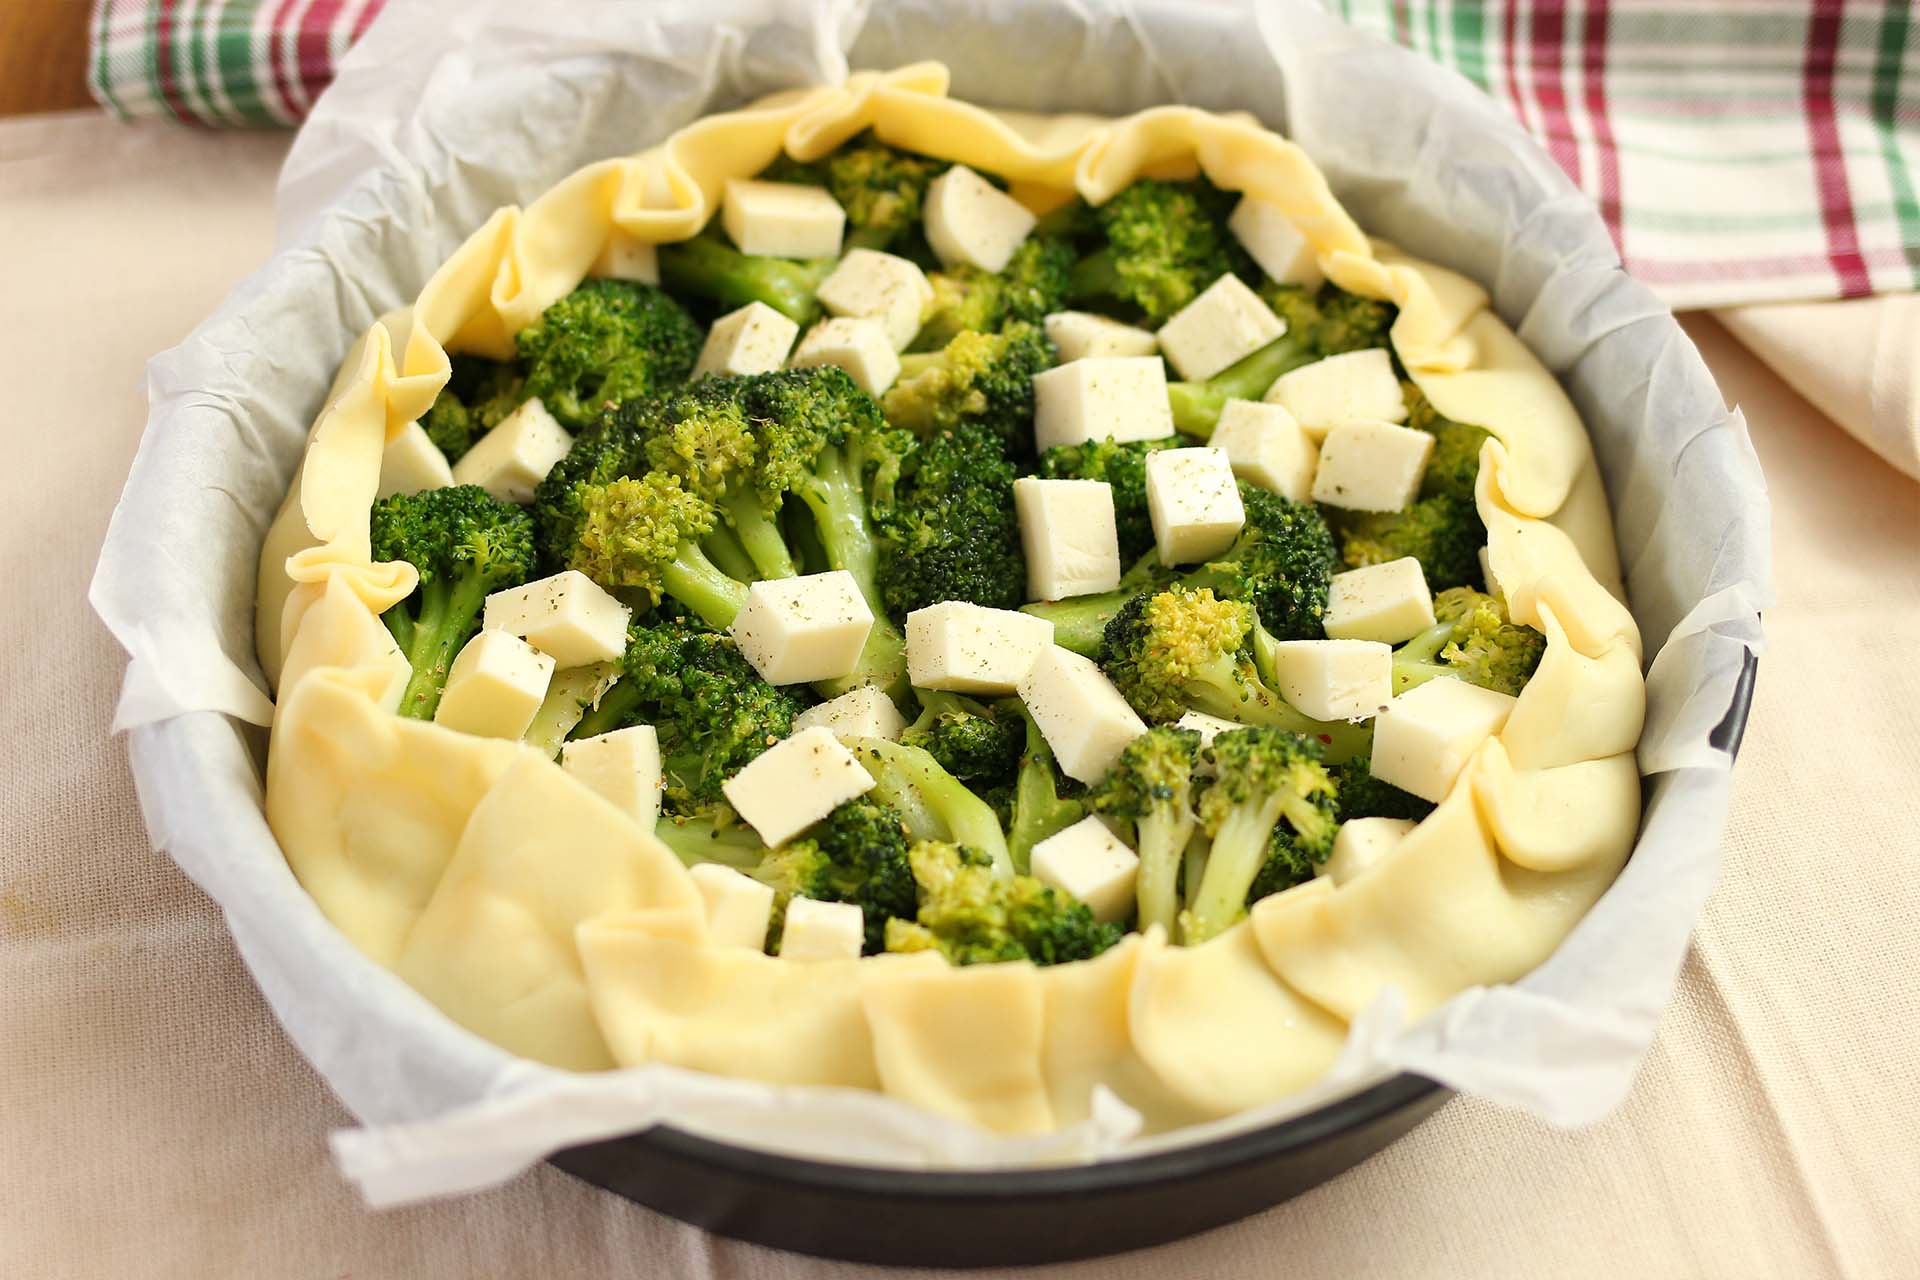 Torta rustica broccoletti e mozzarella - Step 3